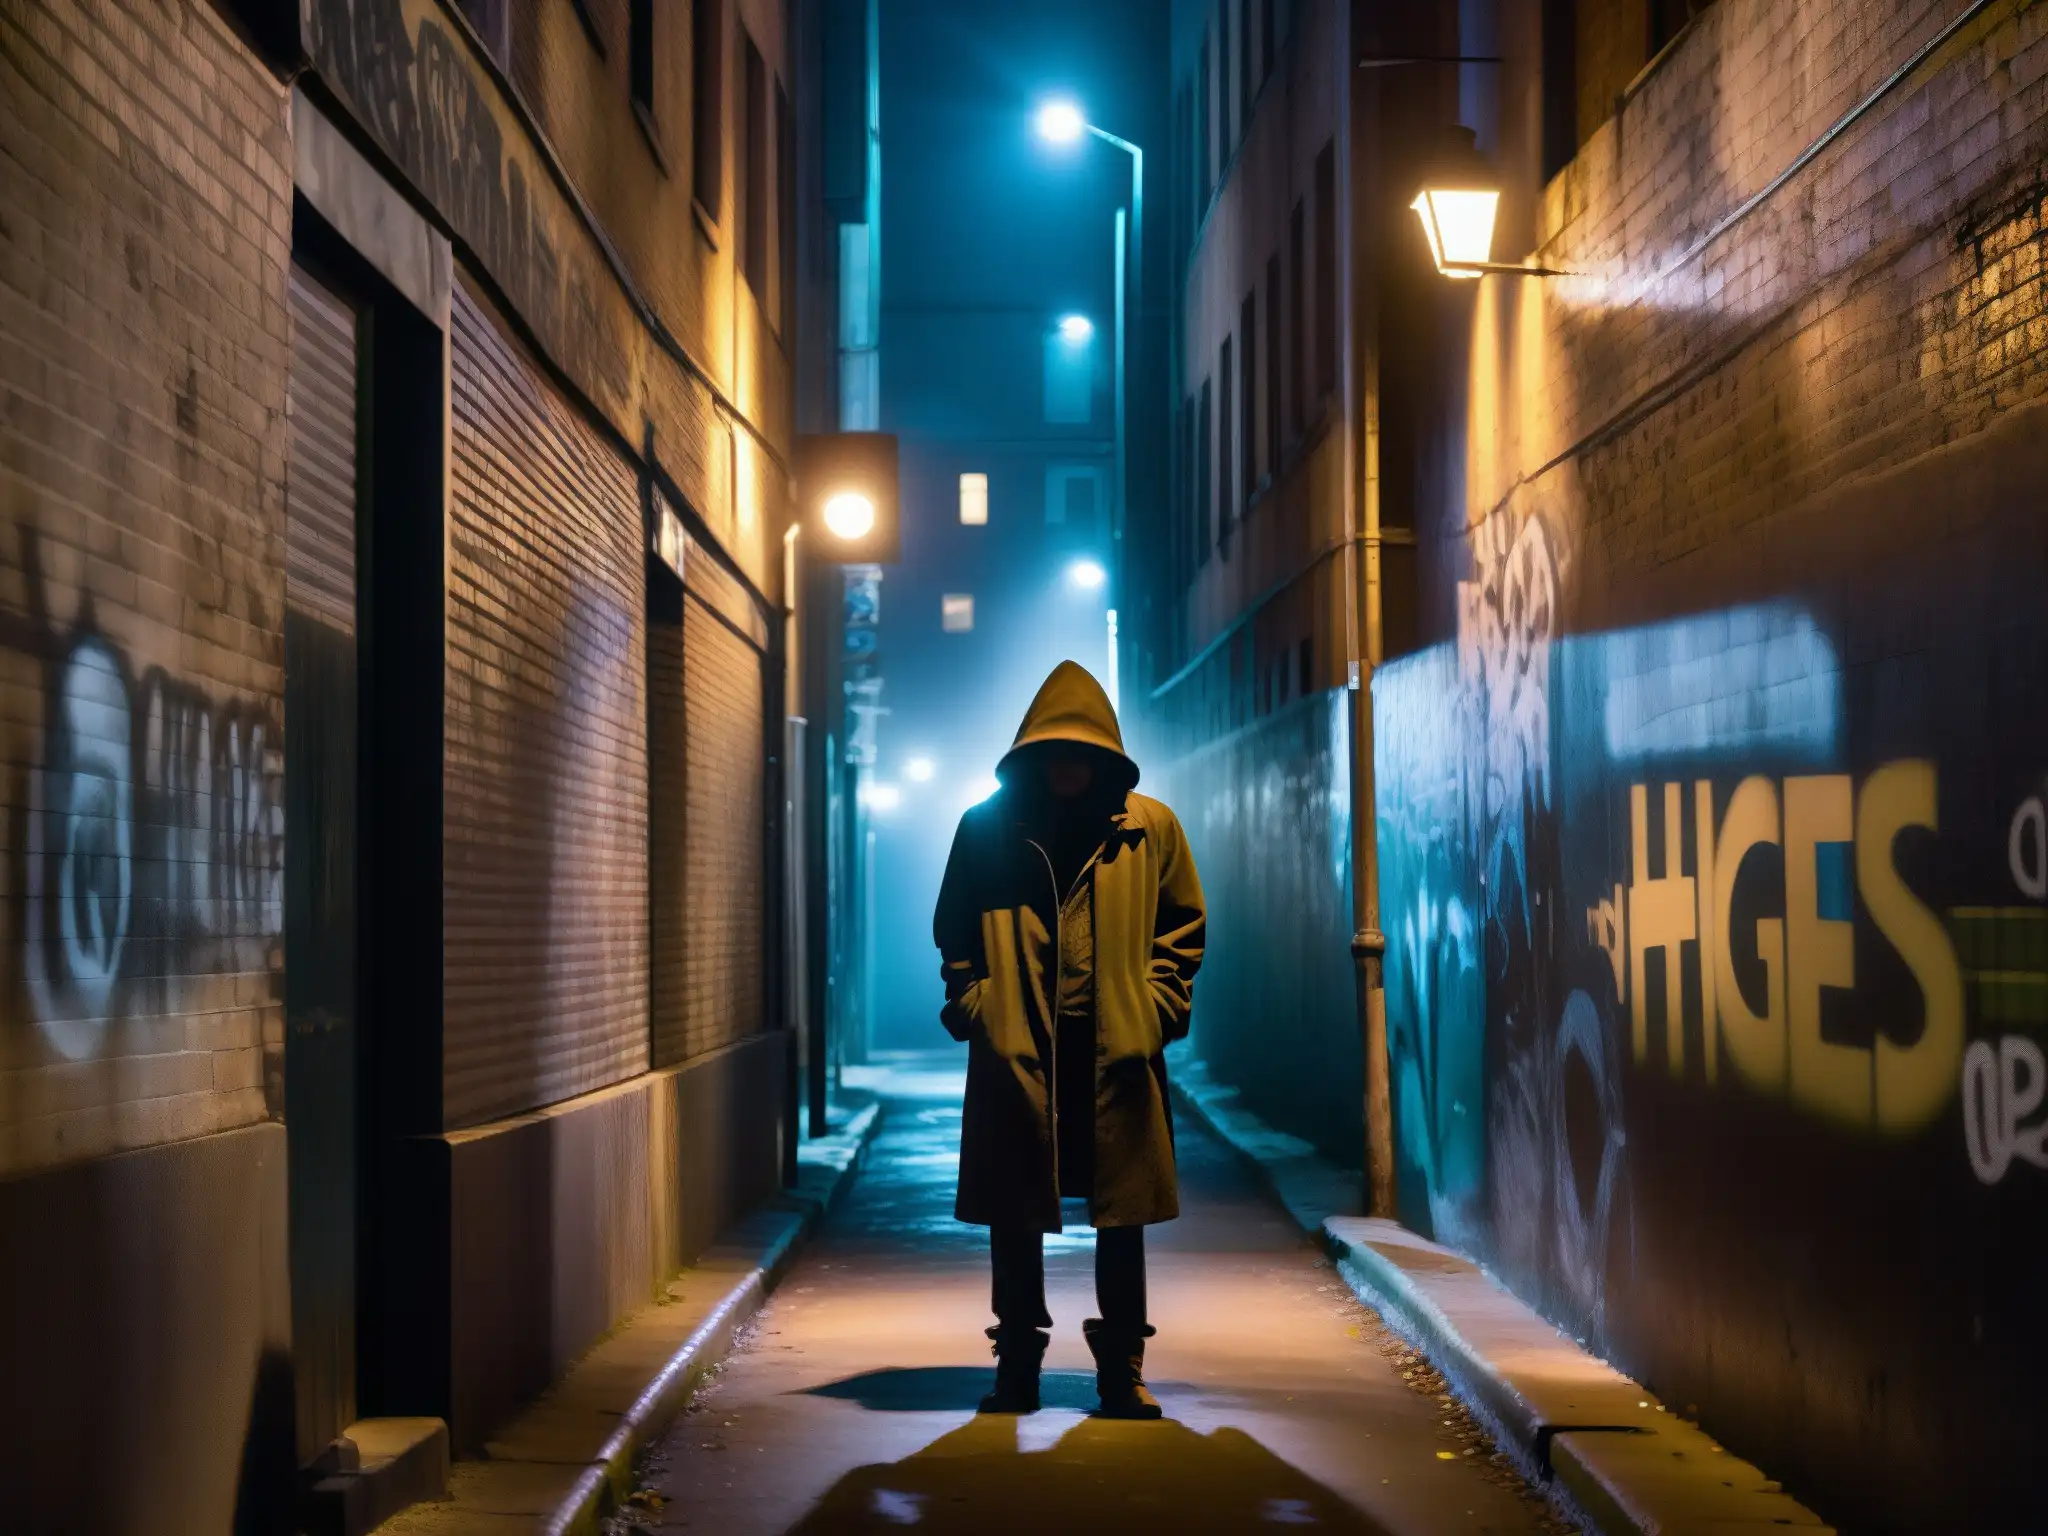 Un callejón urbano oscuro con grafitis y una figura misteriosa, evocando impacto narrativo y leyendas urbanas